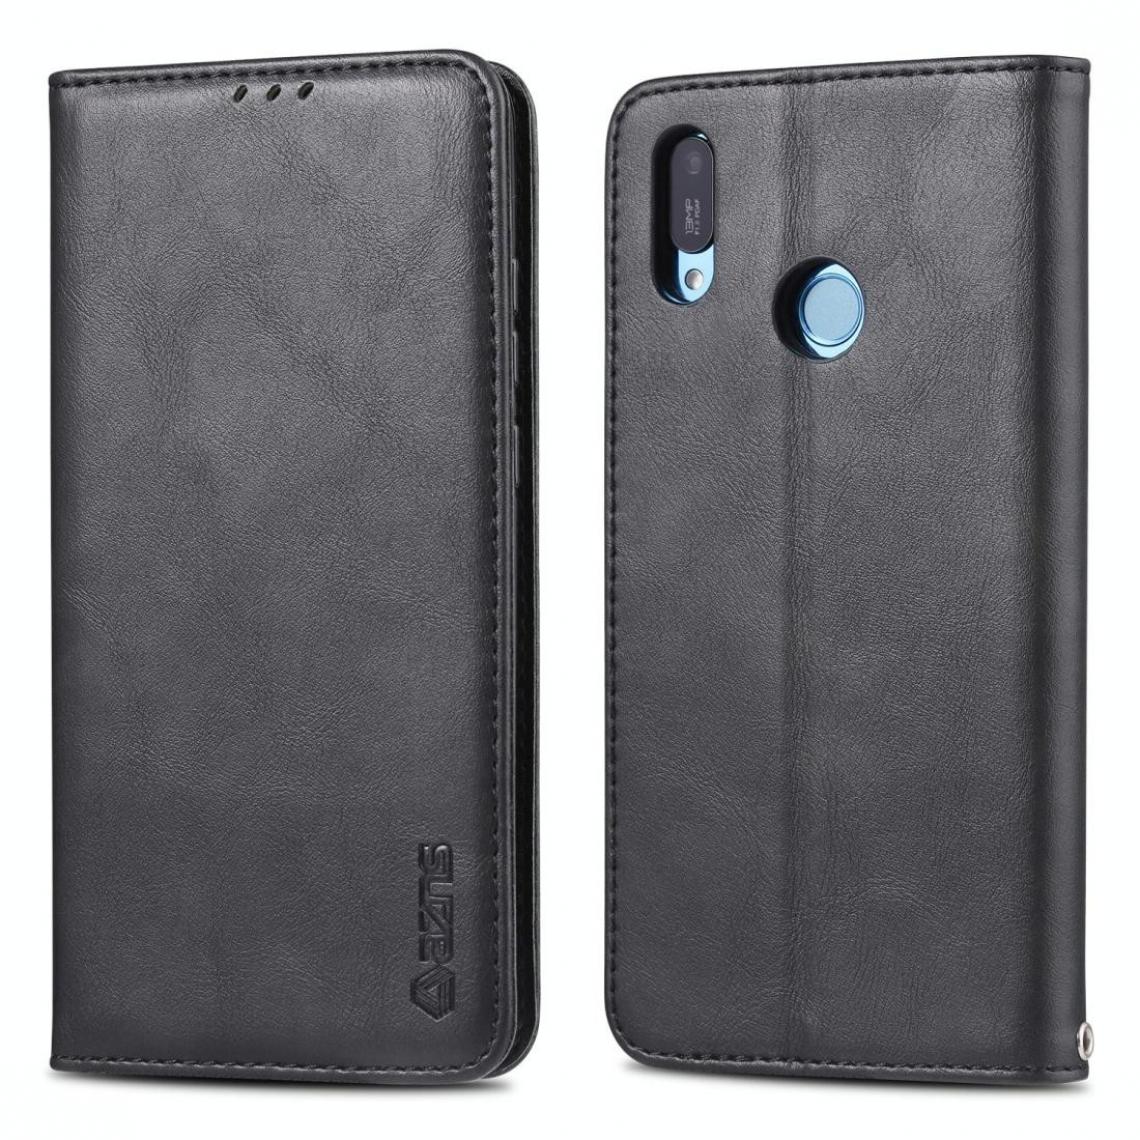 Wewoo - Housse Coque Pour Huawei Y6 2019 / Profitez de l'étui en cuir PU magnétique à texture rétro 9E AZNS avec support et fentes cartes et cadre photo noir - Coque, étui smartphone